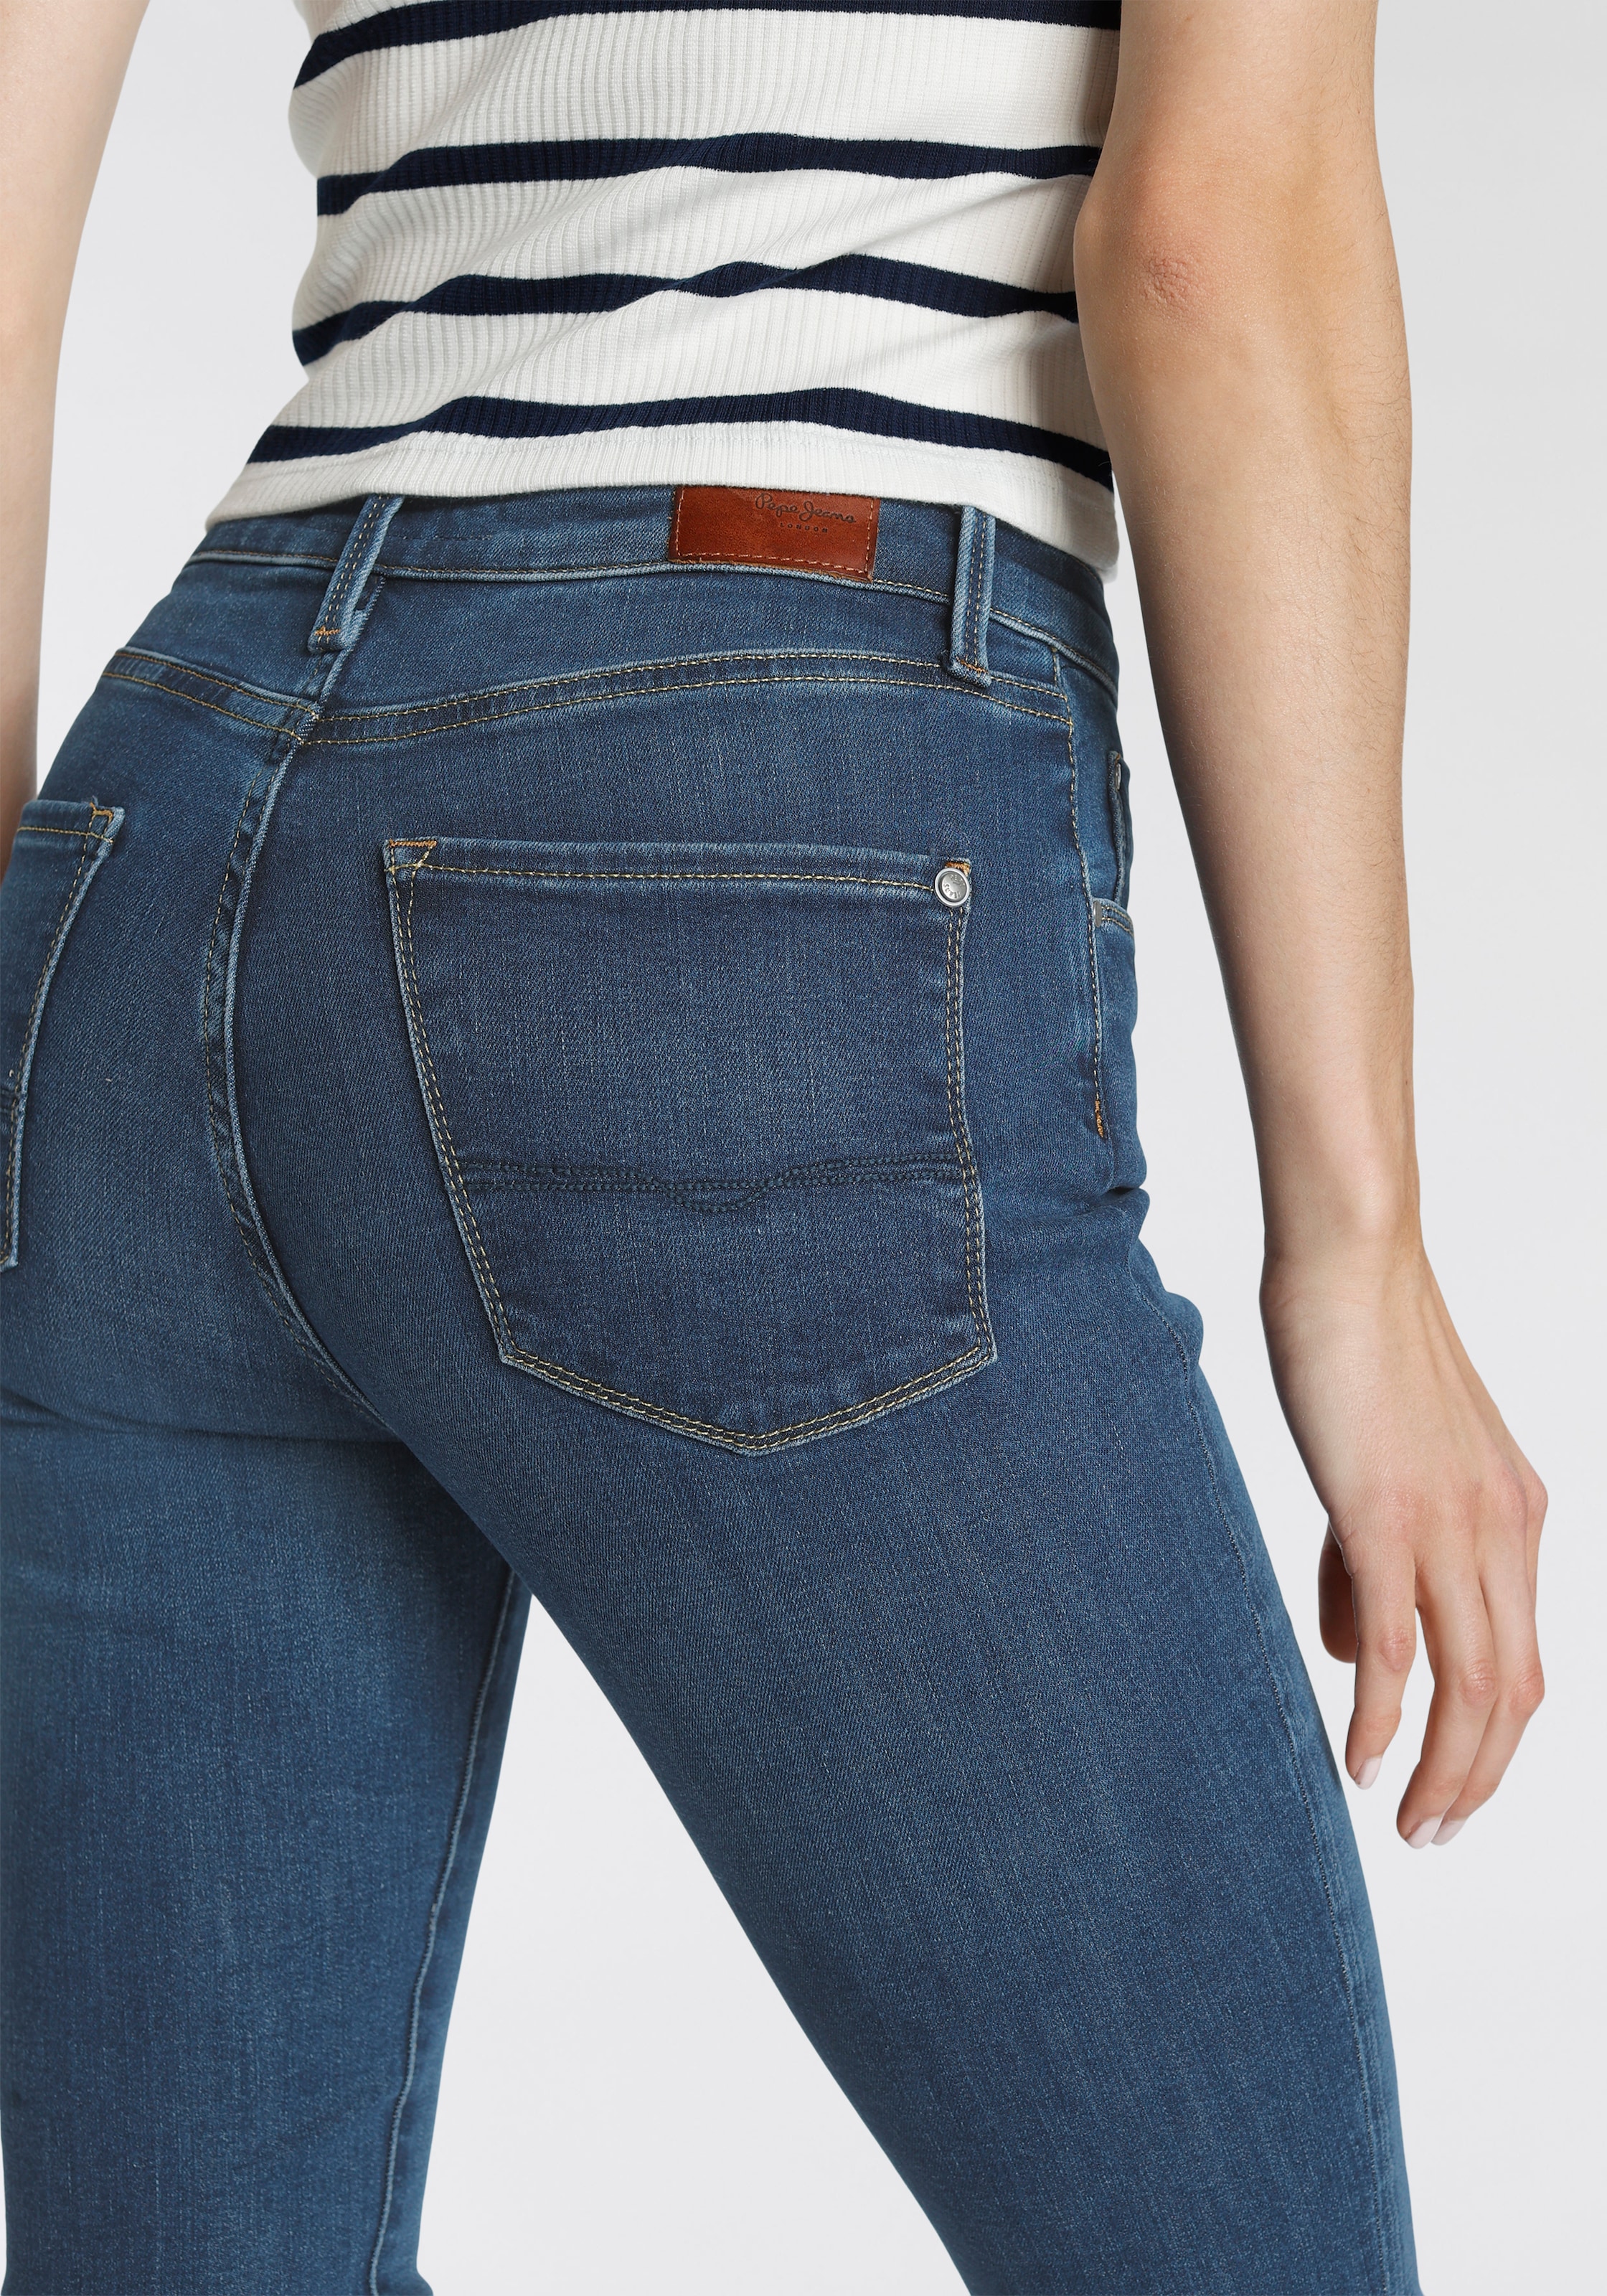 »REGENT«, hohem Pepe in bequemem Online Skinny OTTO kaufen Passform Bund im aus Röhrenjeans Jeans Denim Stretch Shop mit seidig